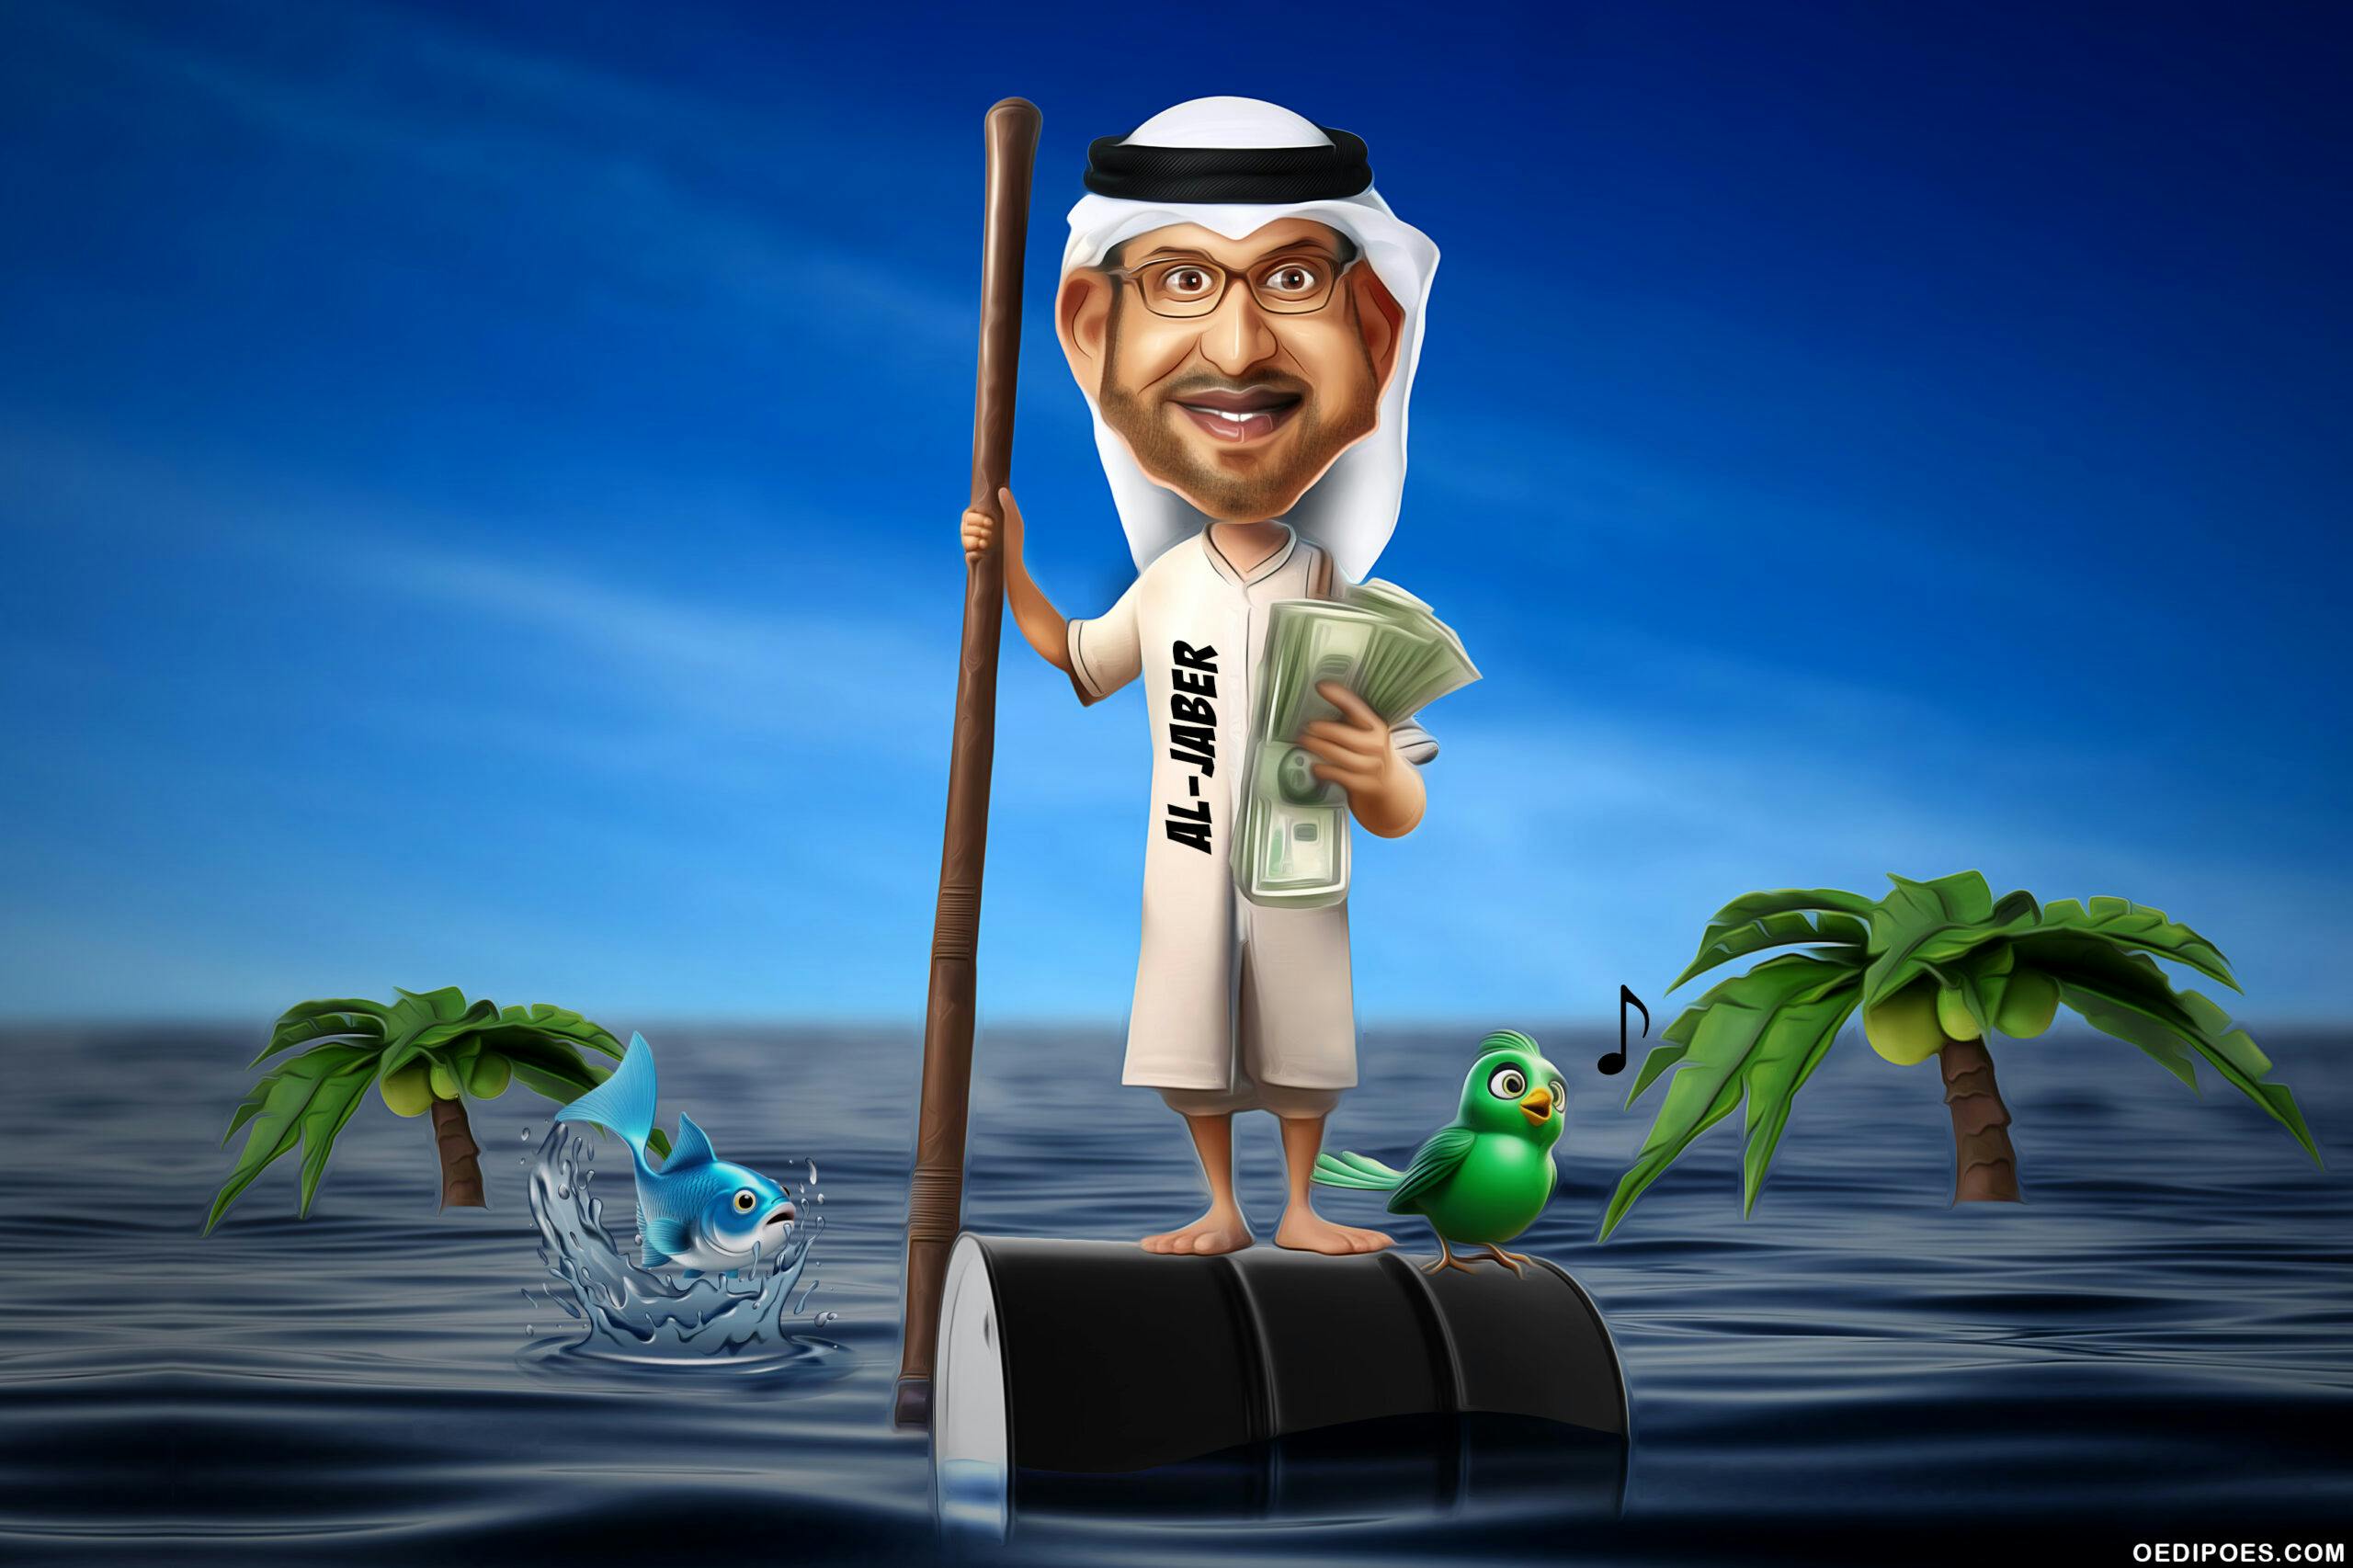 کارتونی از سلطان الجابر، رییس کاپ ۲۸ که روی یک بشکه نفت در دریایی سیاه از نفت ایستاده